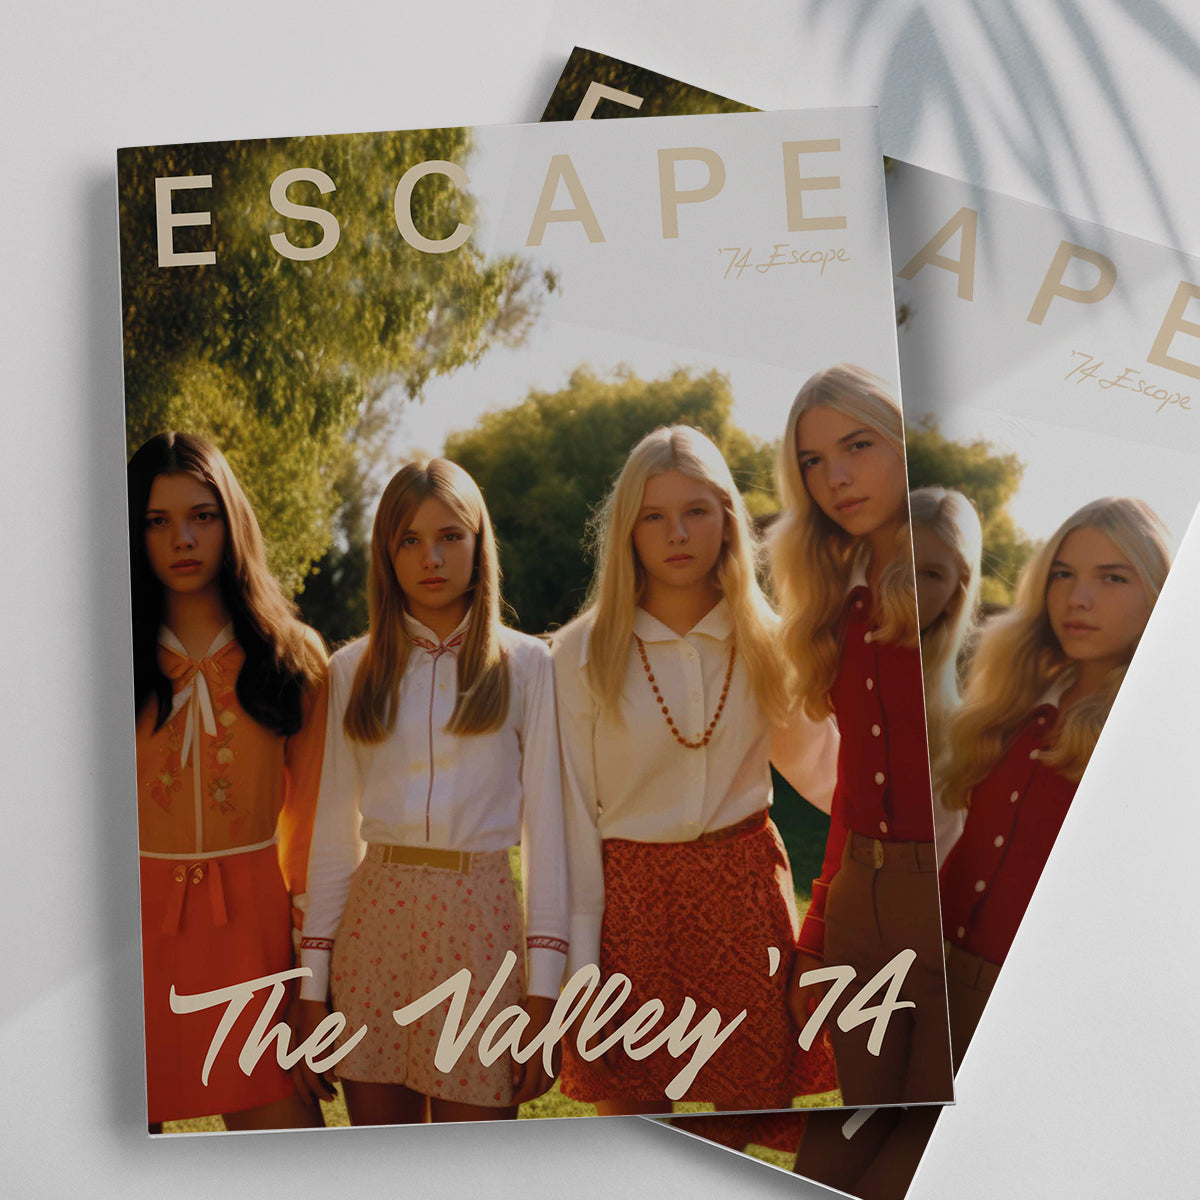 Escape AI Issue No.1 - The Valley '74